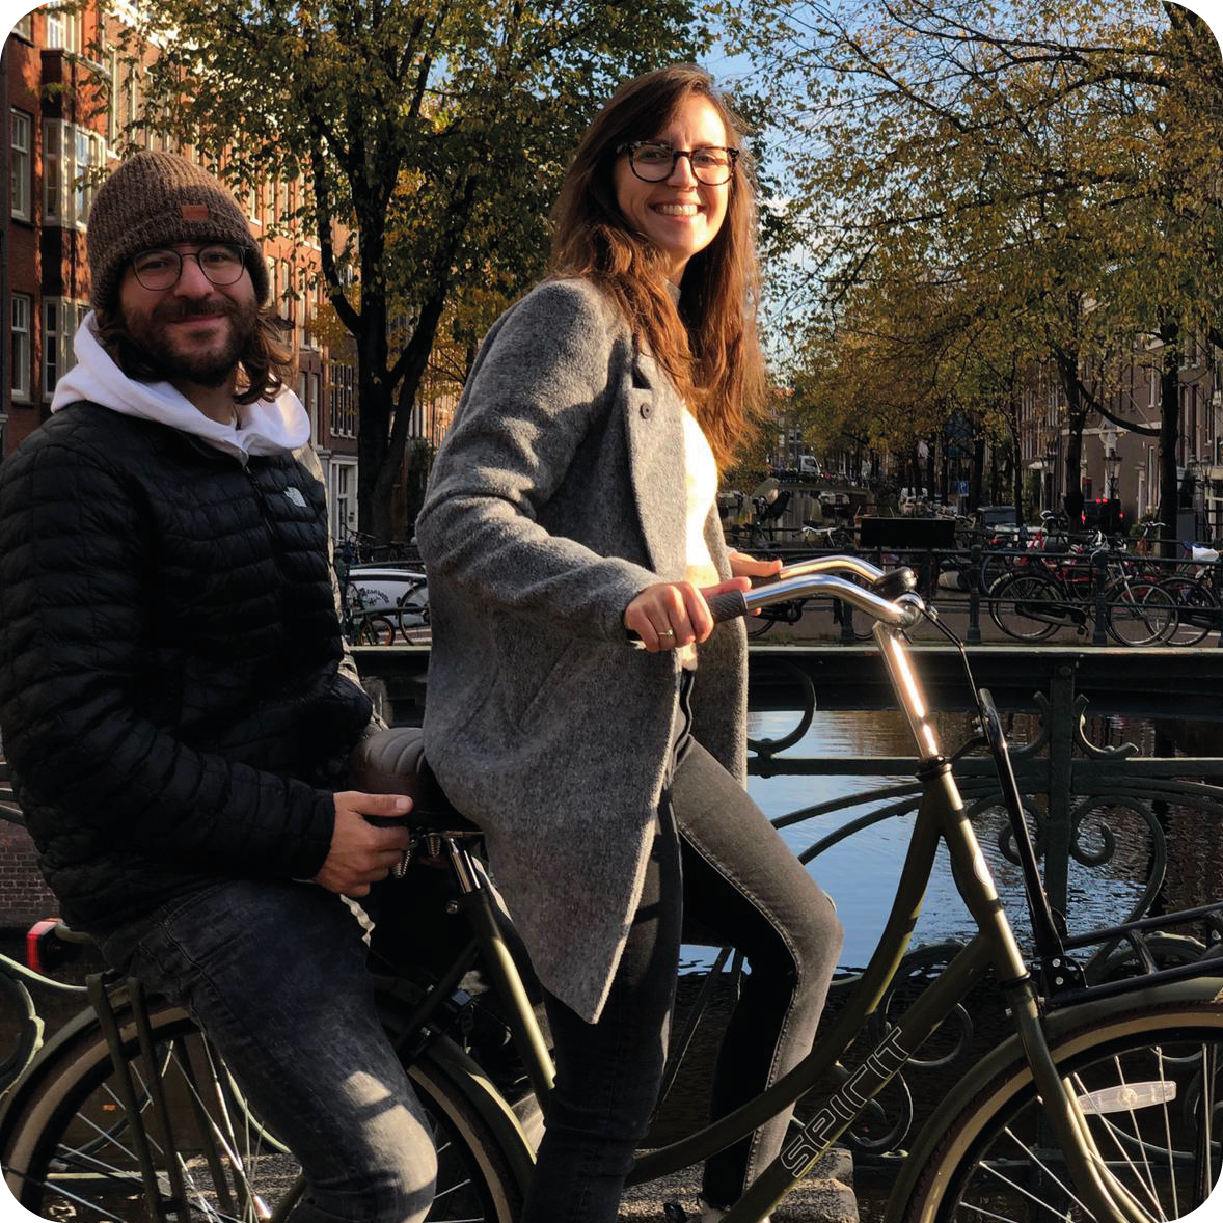 #Ride #Love #Share: storie straordinarie di ciclisti ordinari